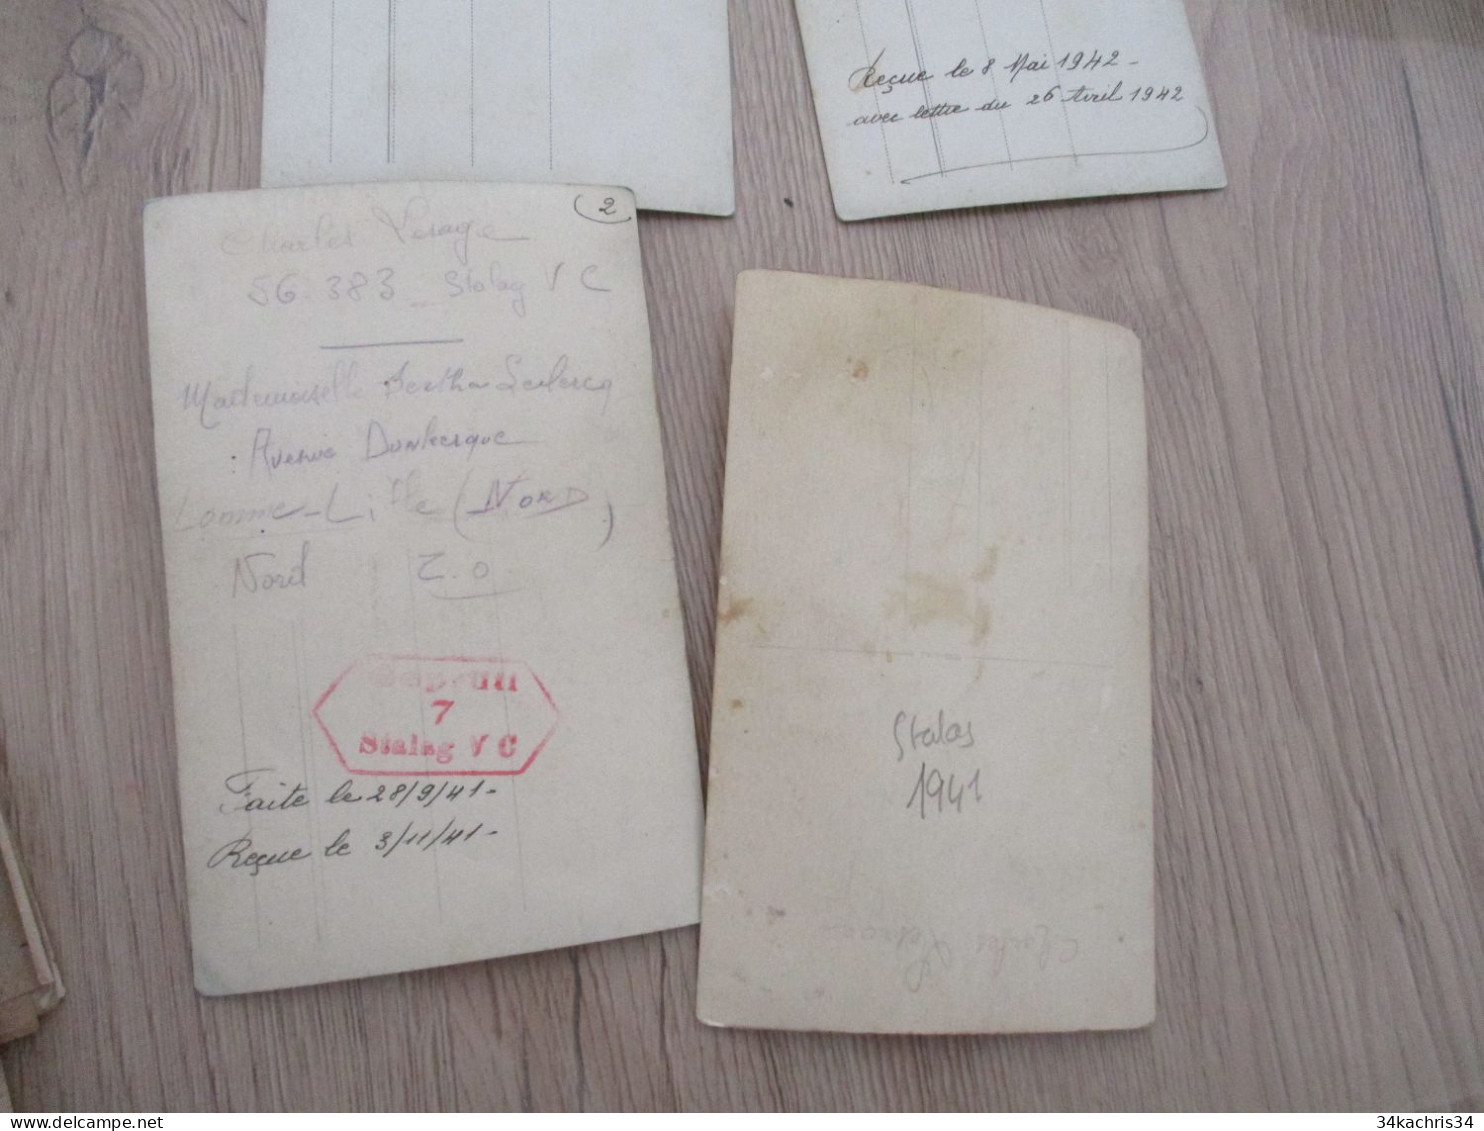 militaria Guerre 39/45 C.LESAGE importante archive photo lettres dossier militaire  prisonniers de guerre